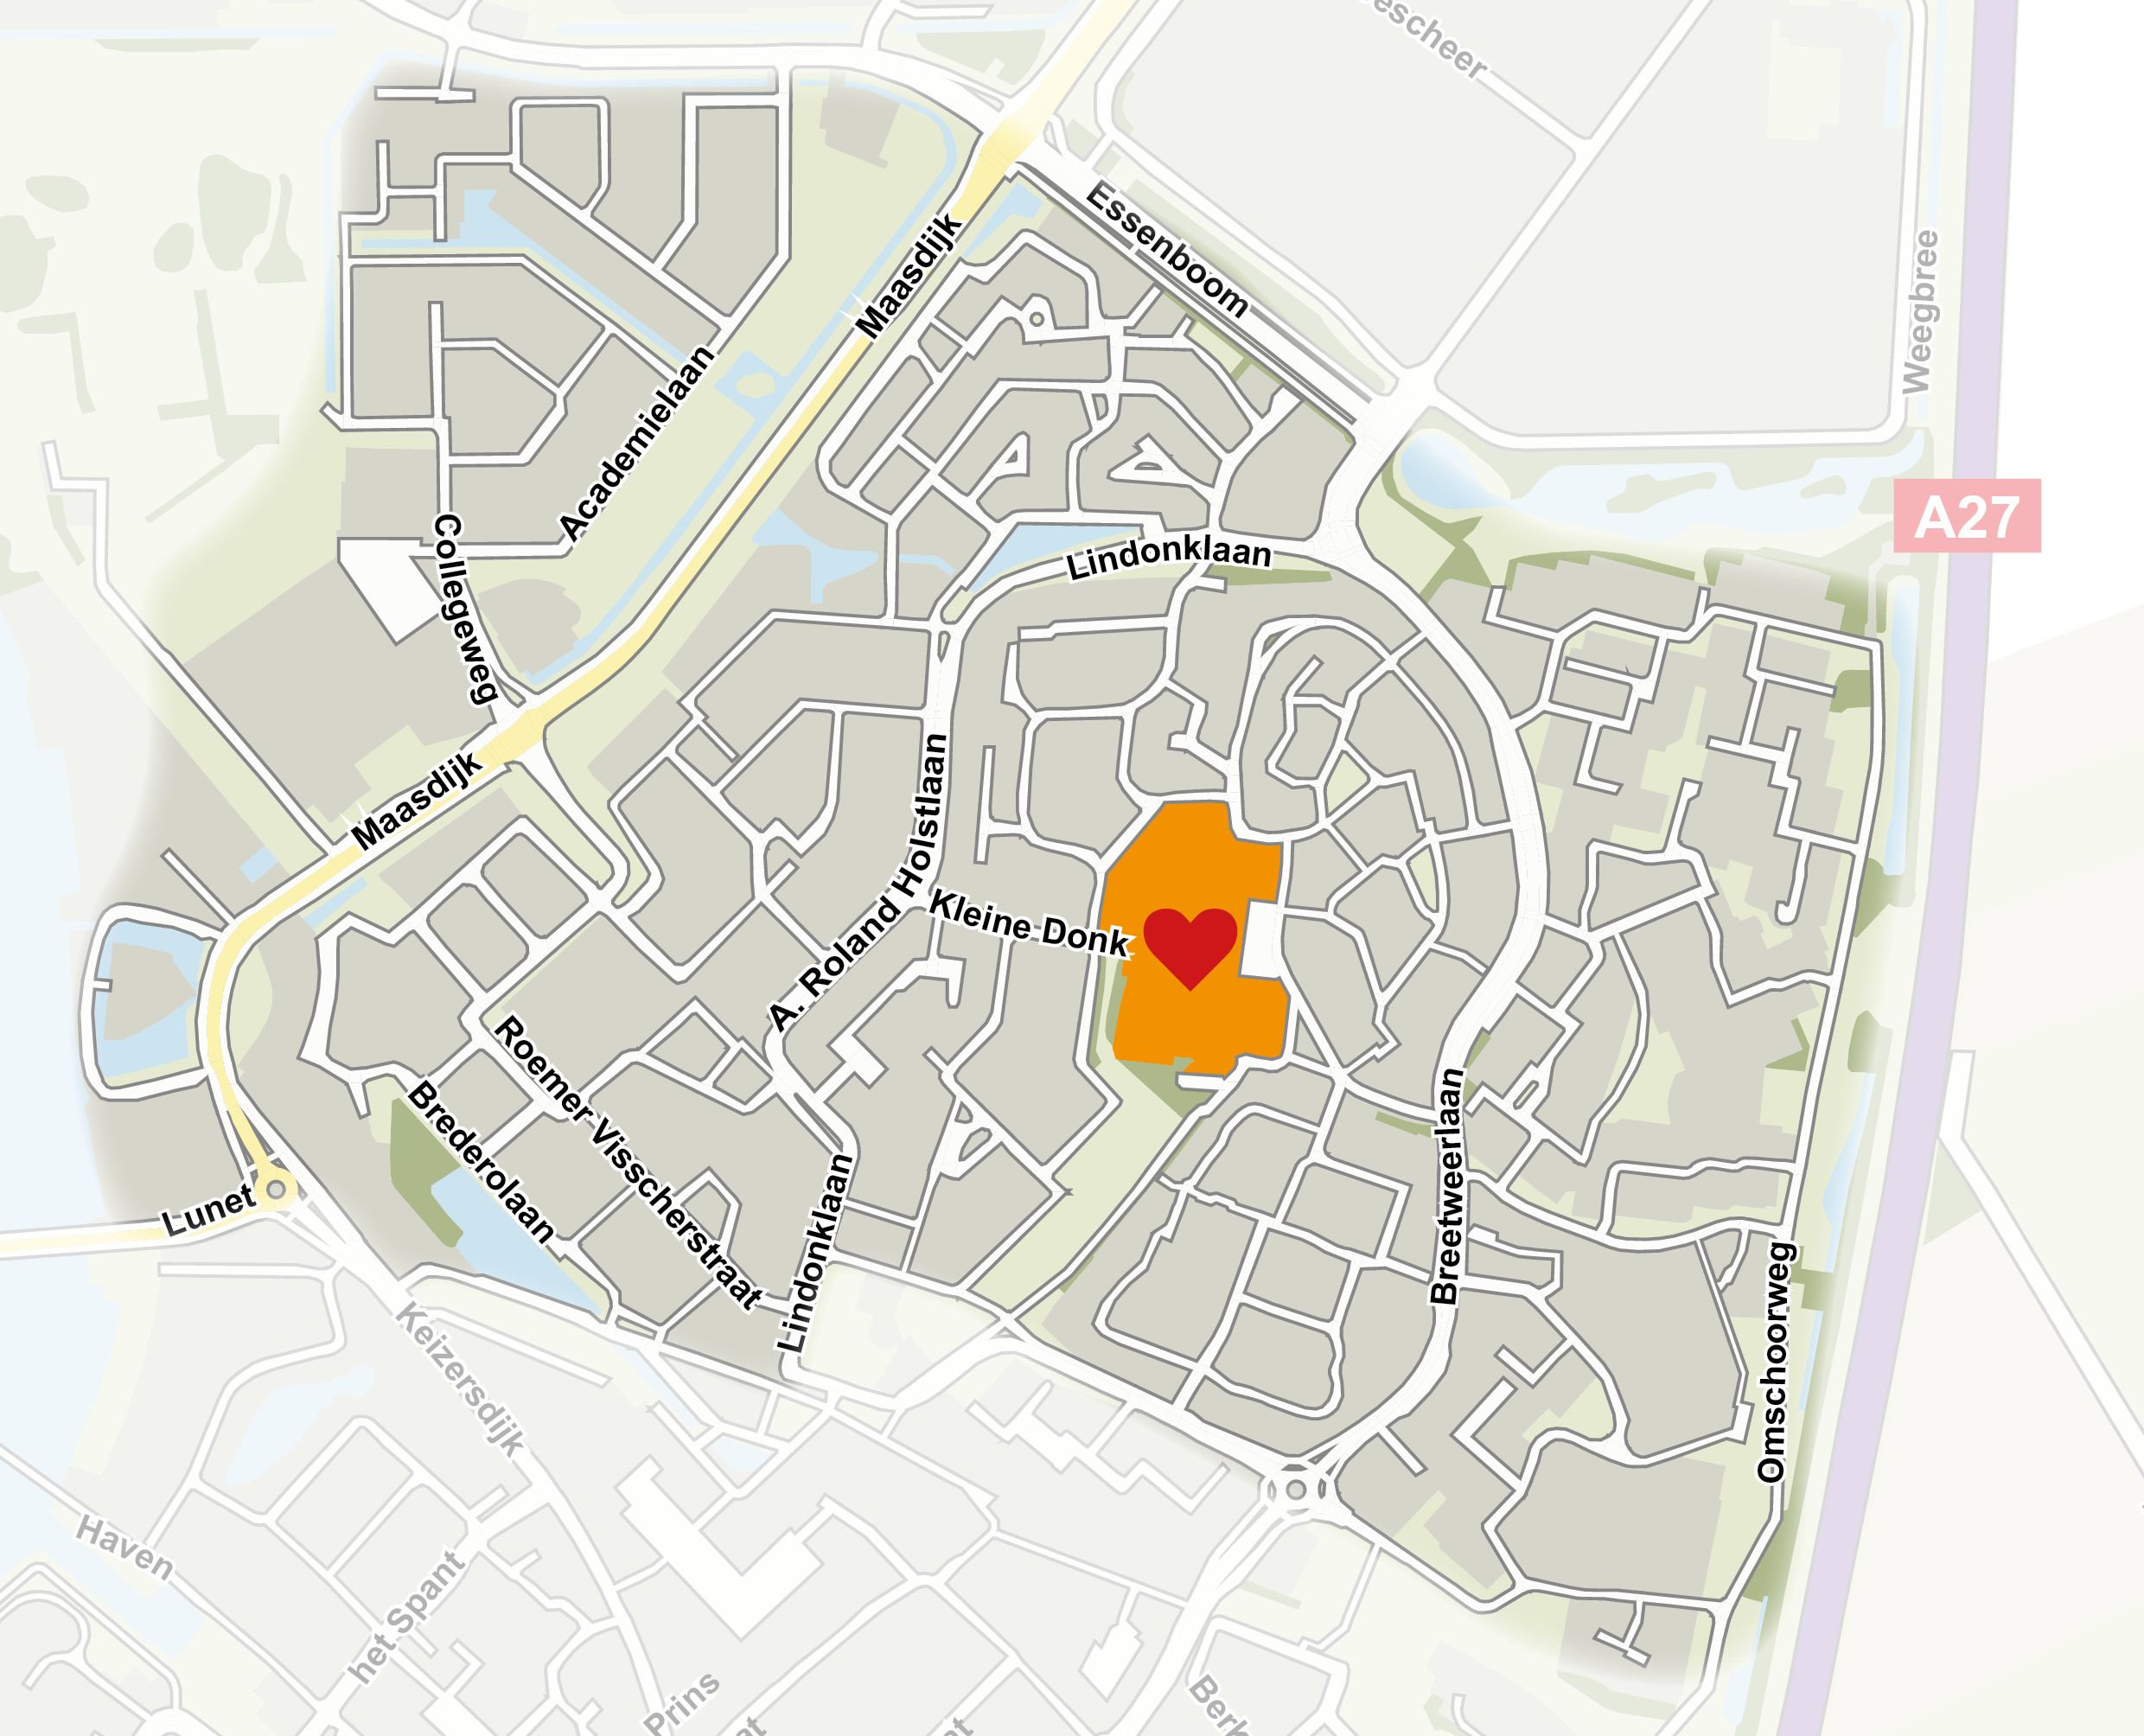 Wijkkaart Raamsdonksveer-Noord met hierin het projectgebied aangegeven met een hart